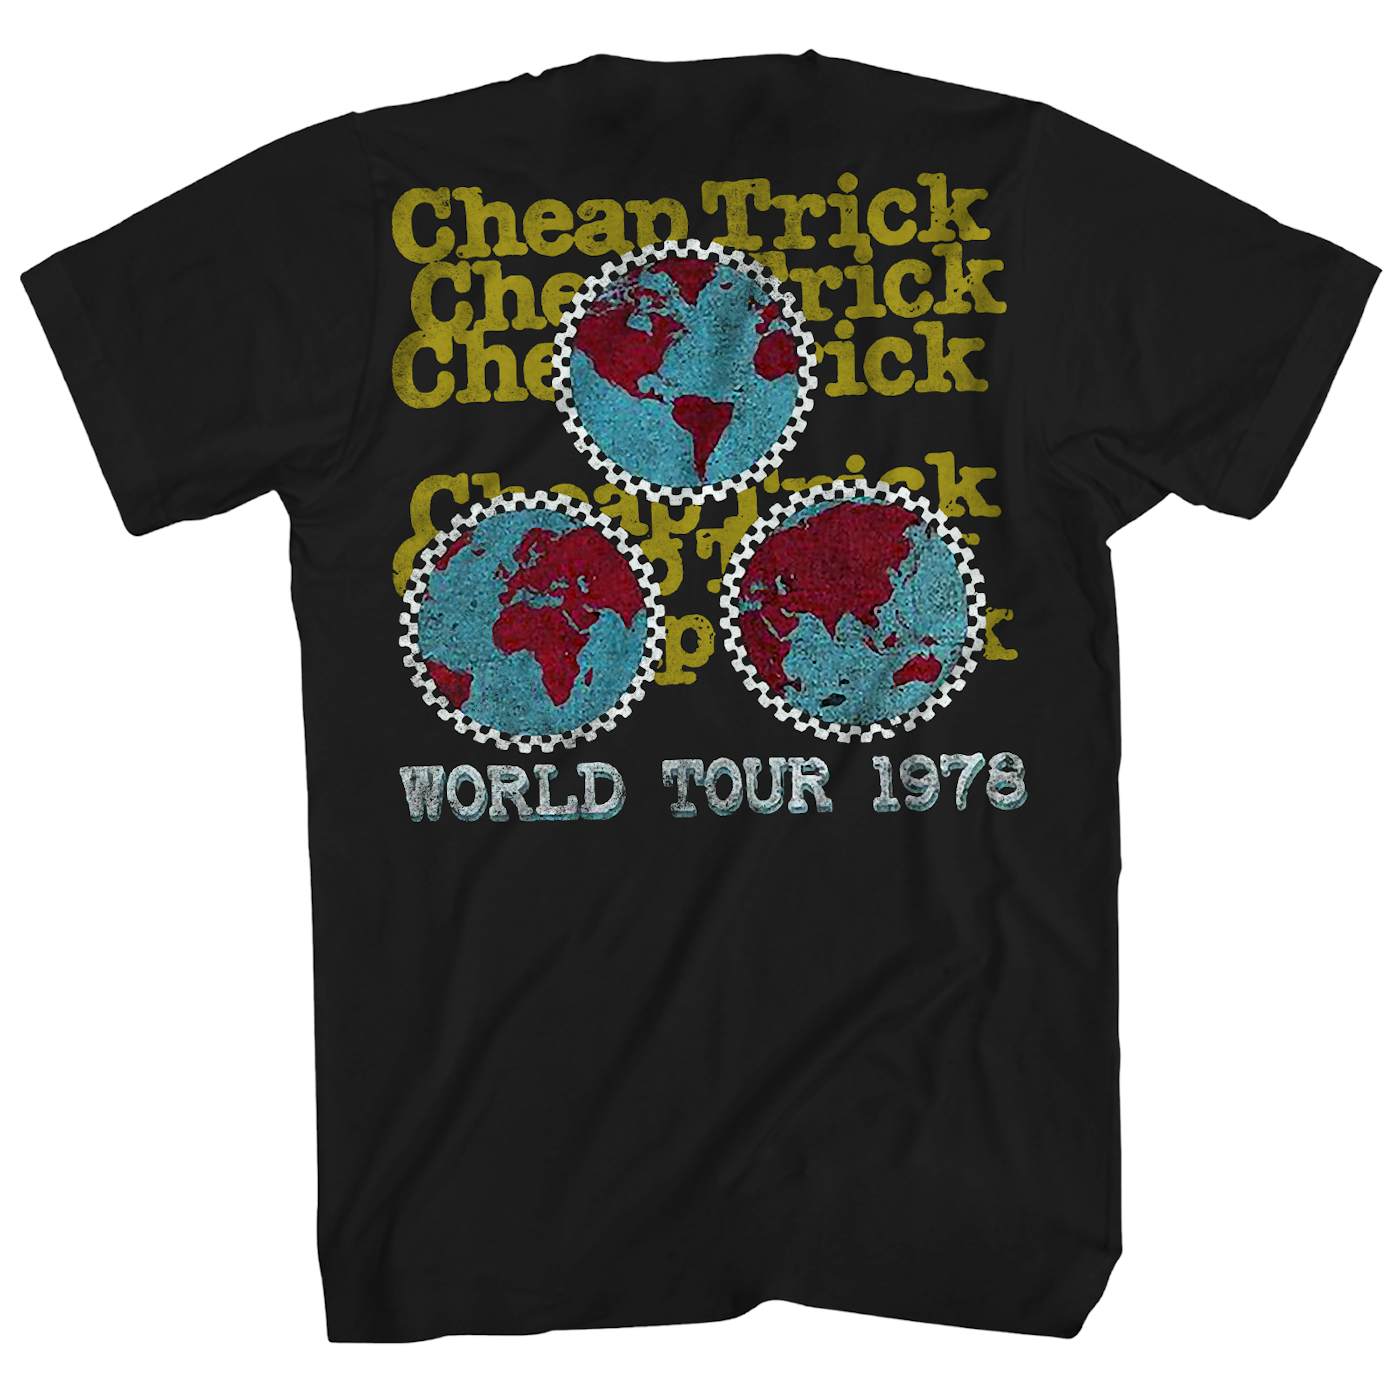 Cheap Trick T-Shirt | World Tour ’78 Cheap Trick Shirt (Reissue)